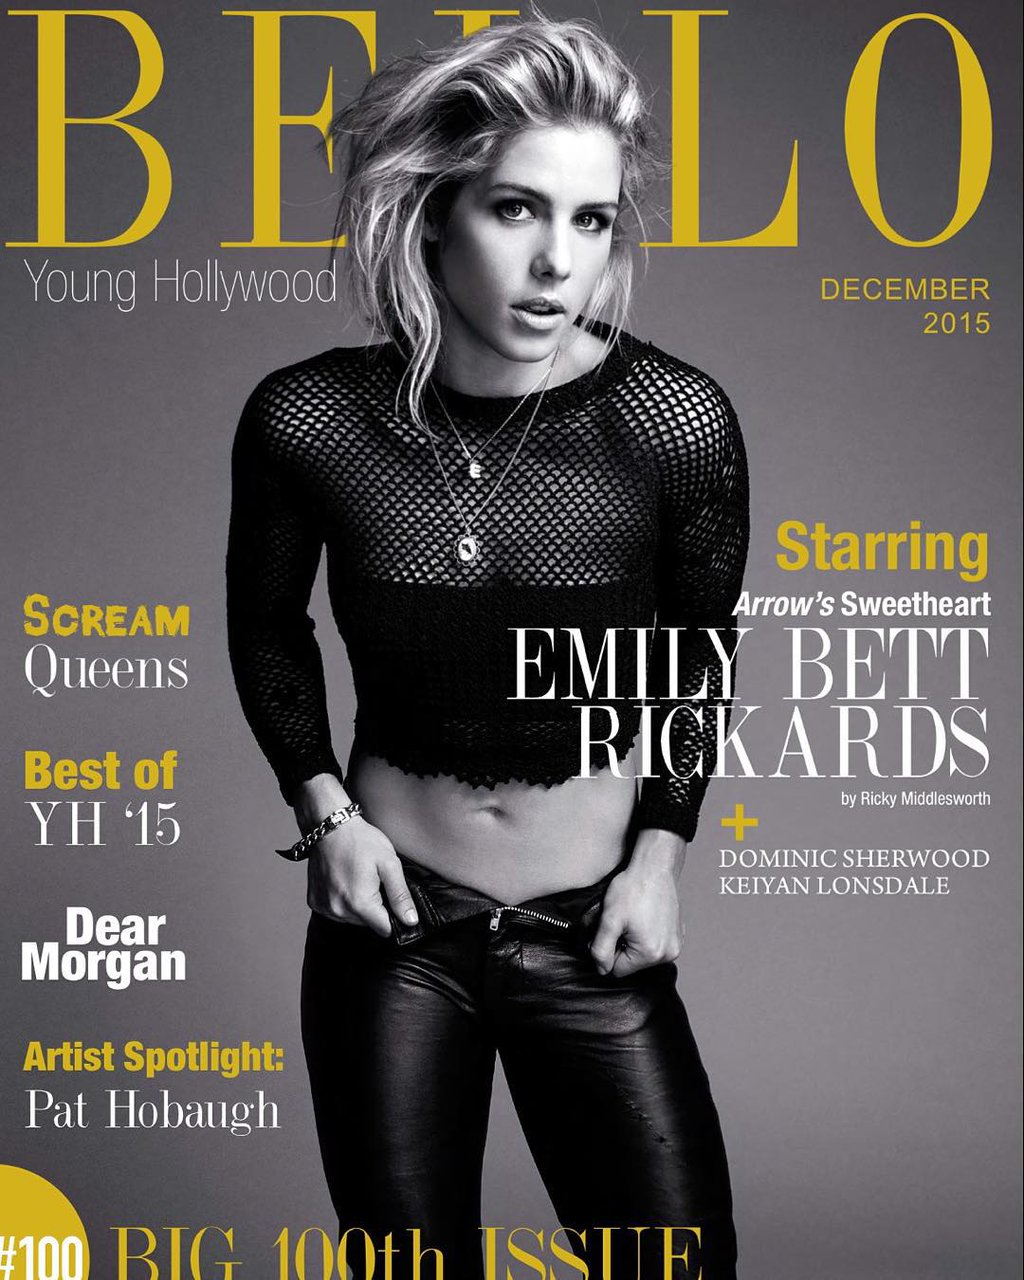 Emily Bett Rickards poses for Bello magazine